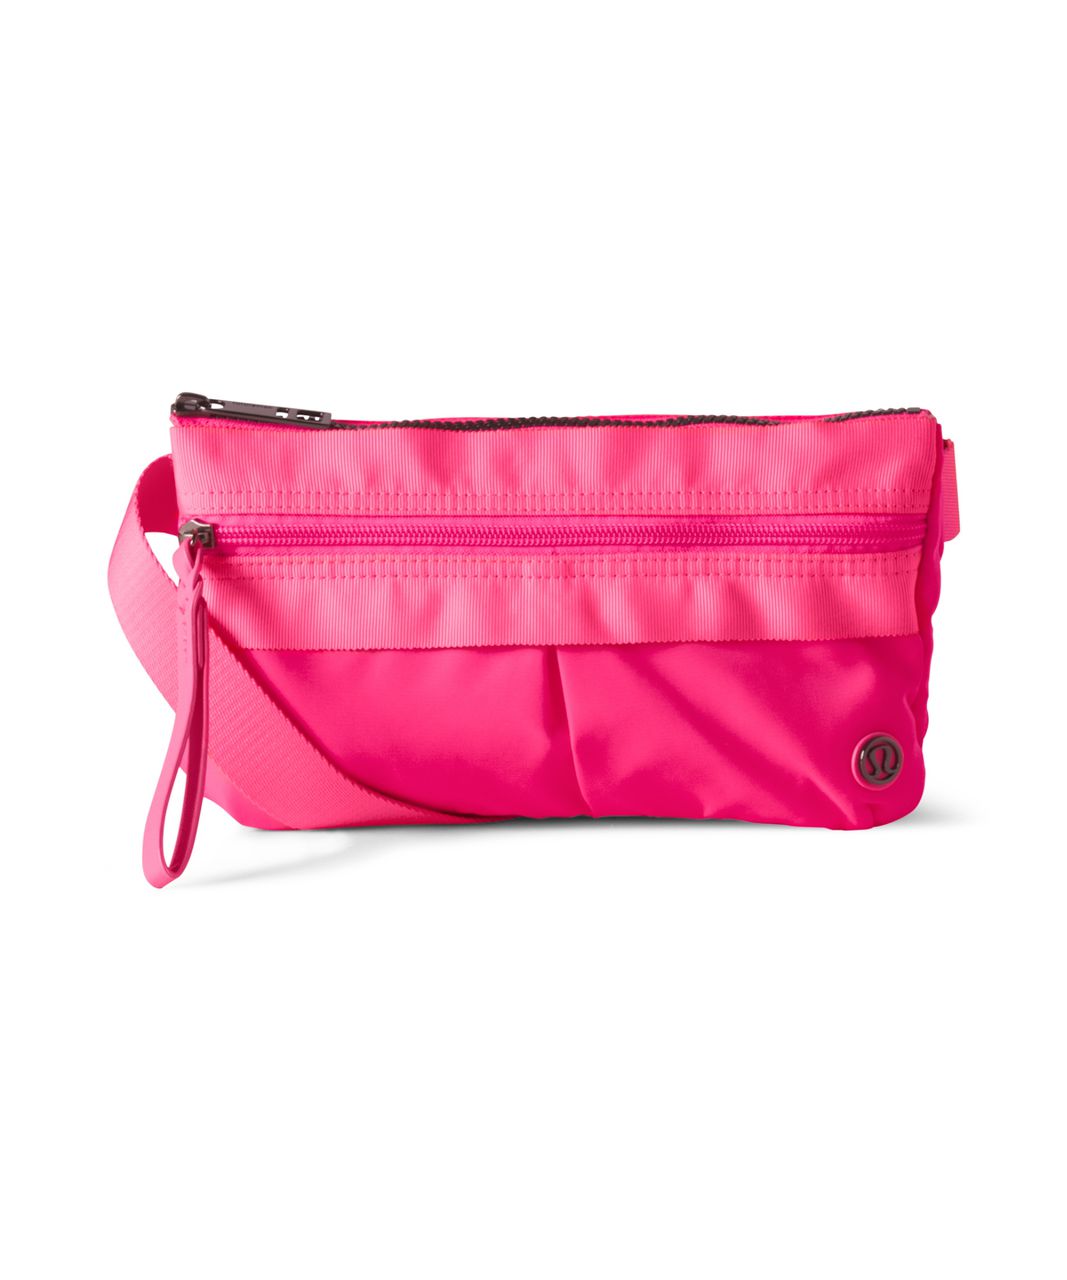 Lululemon Free Spirit Bag - Neon Pink